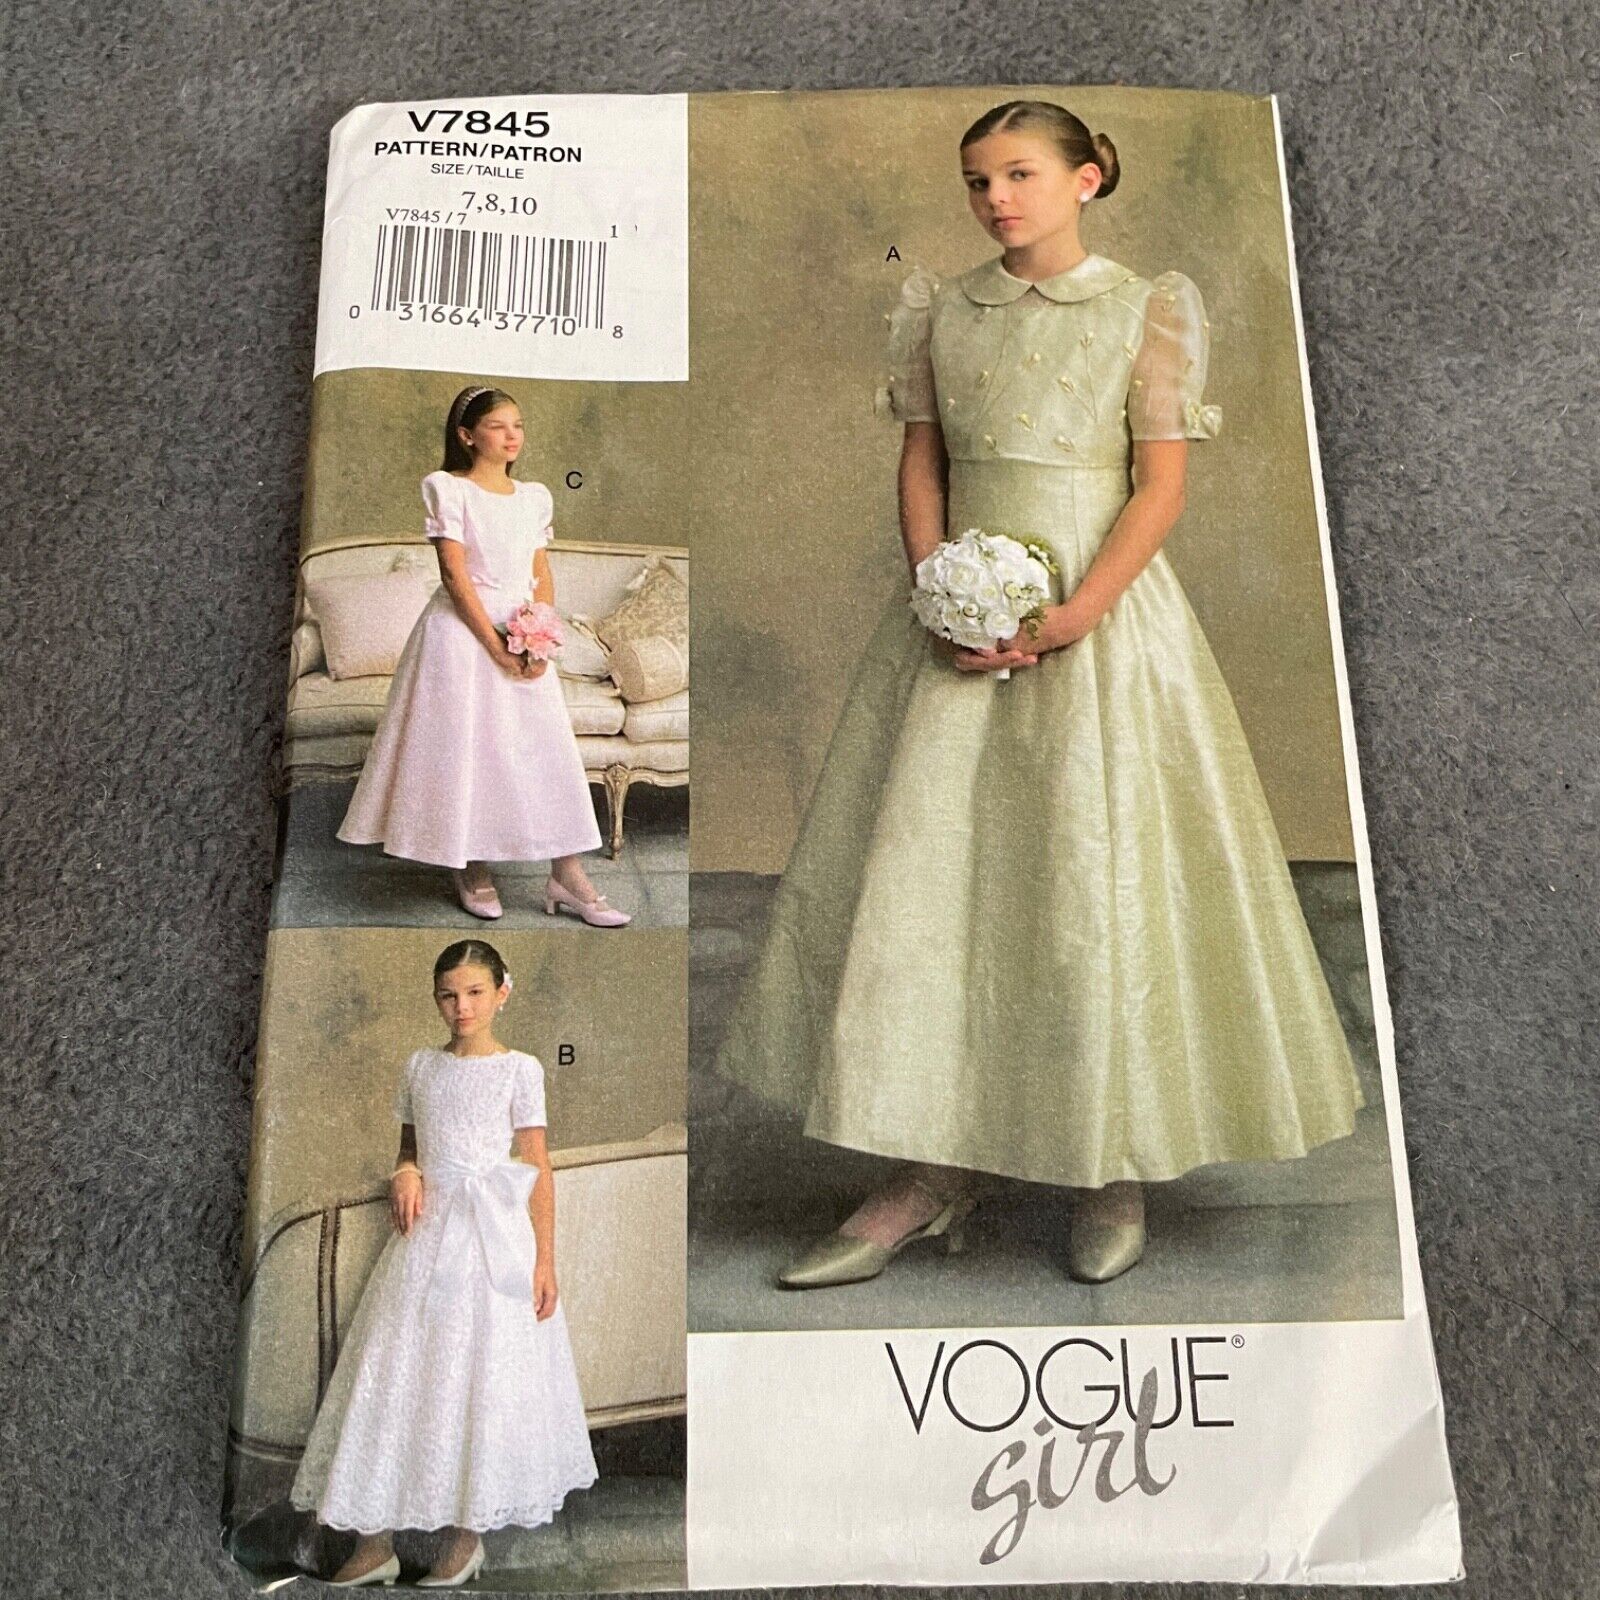 Vogue Pattern V7845 Vogue Girl Jacket Dress Bridesmaid Formal Party 7 8 10 VTG